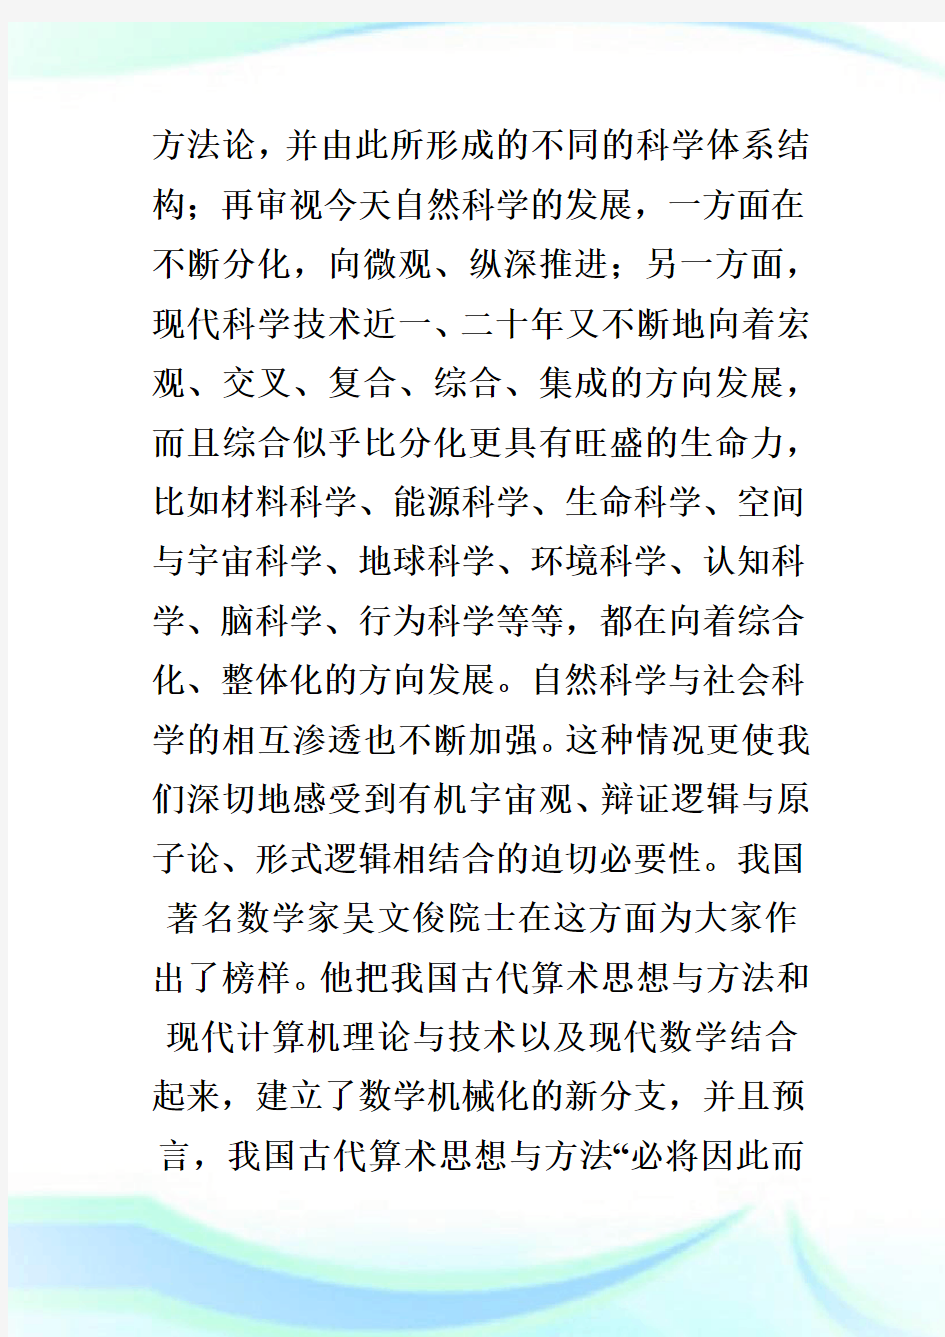 中国古代科学技术发展历史概貌及其特征_管理科学论文_1.doc